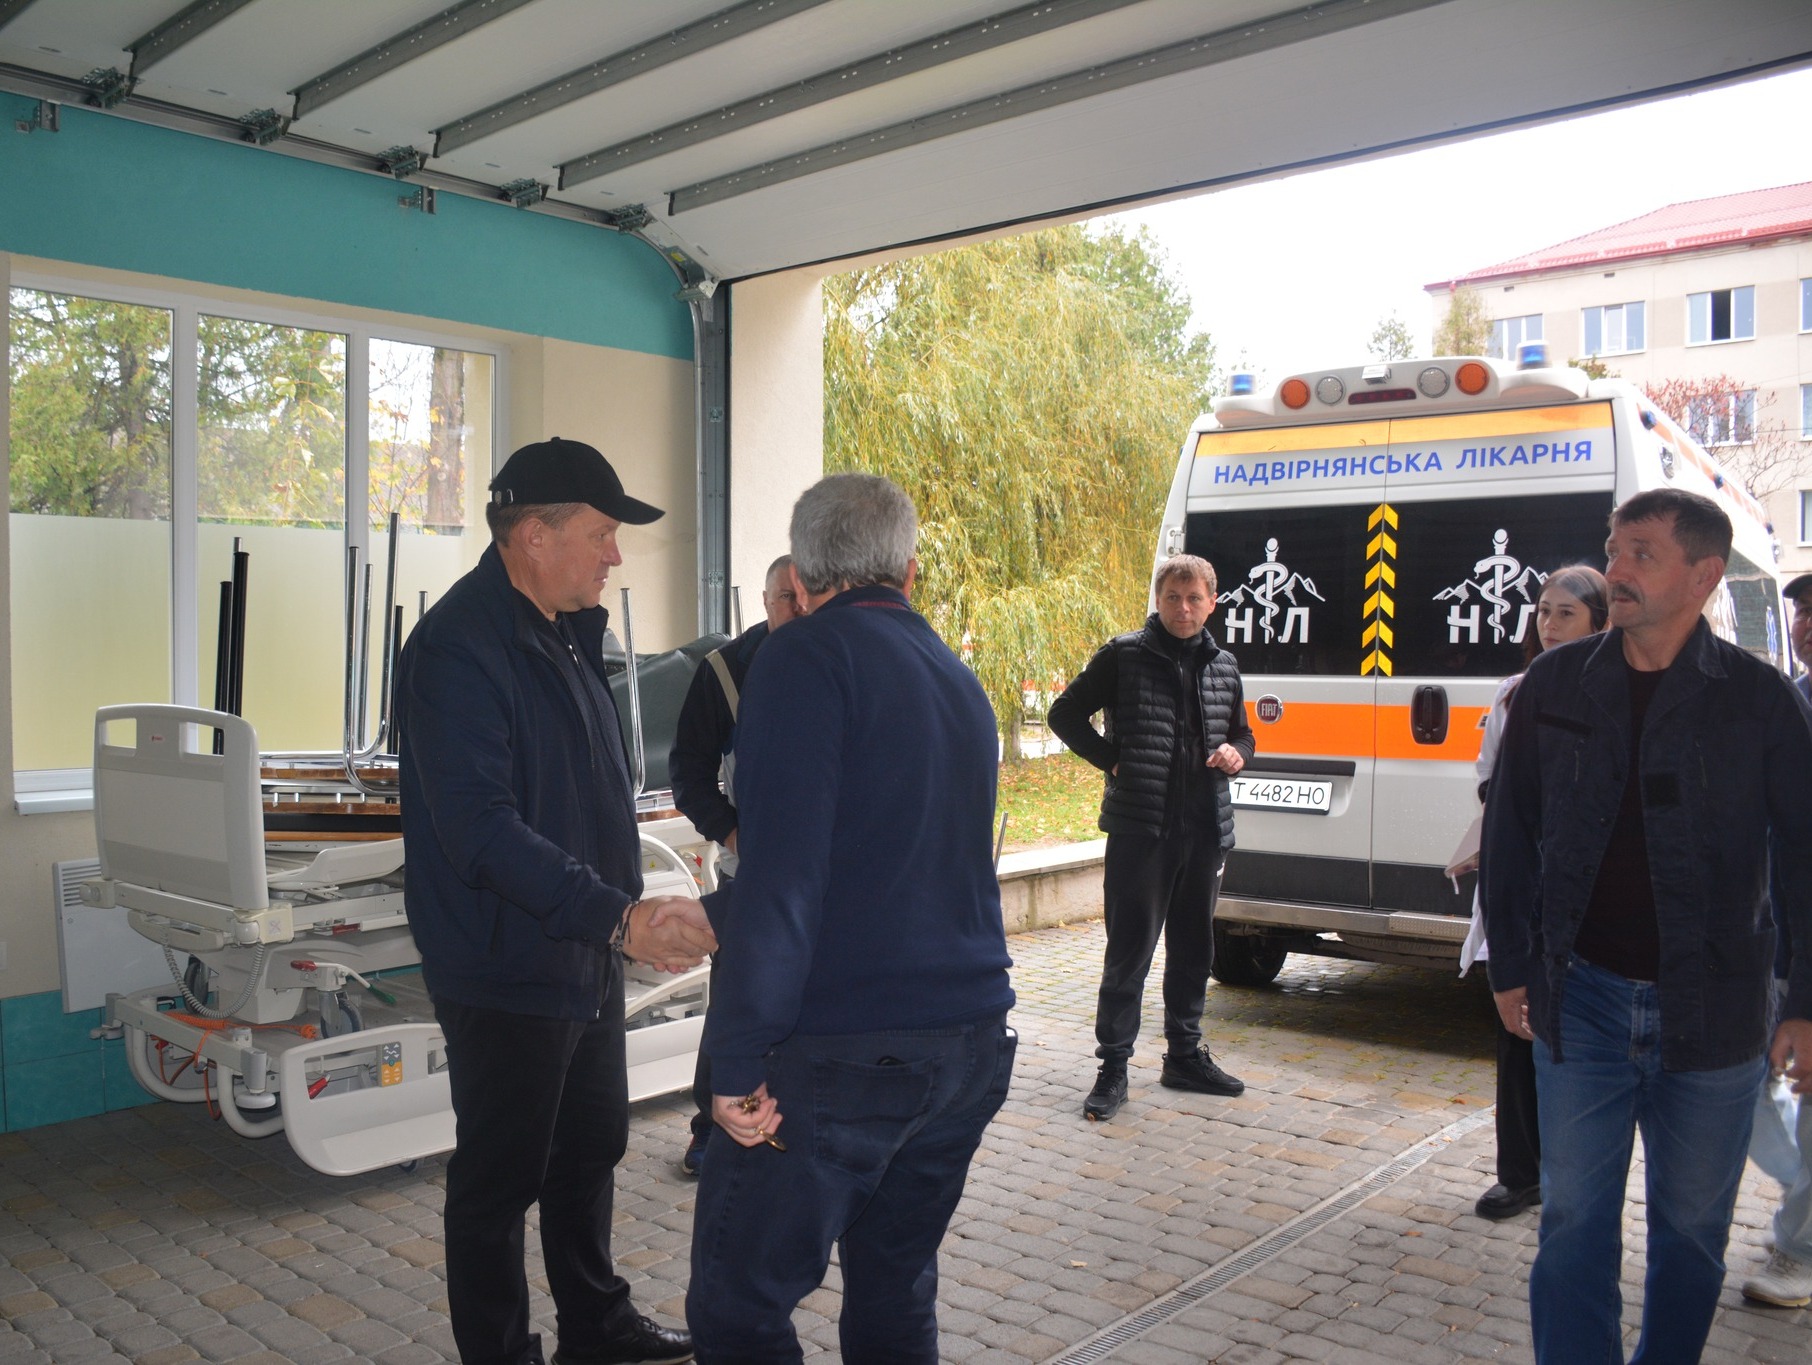 Надвірнянська лікарня отримала гуманітарну допомогу з Бельгії (ФОТО)